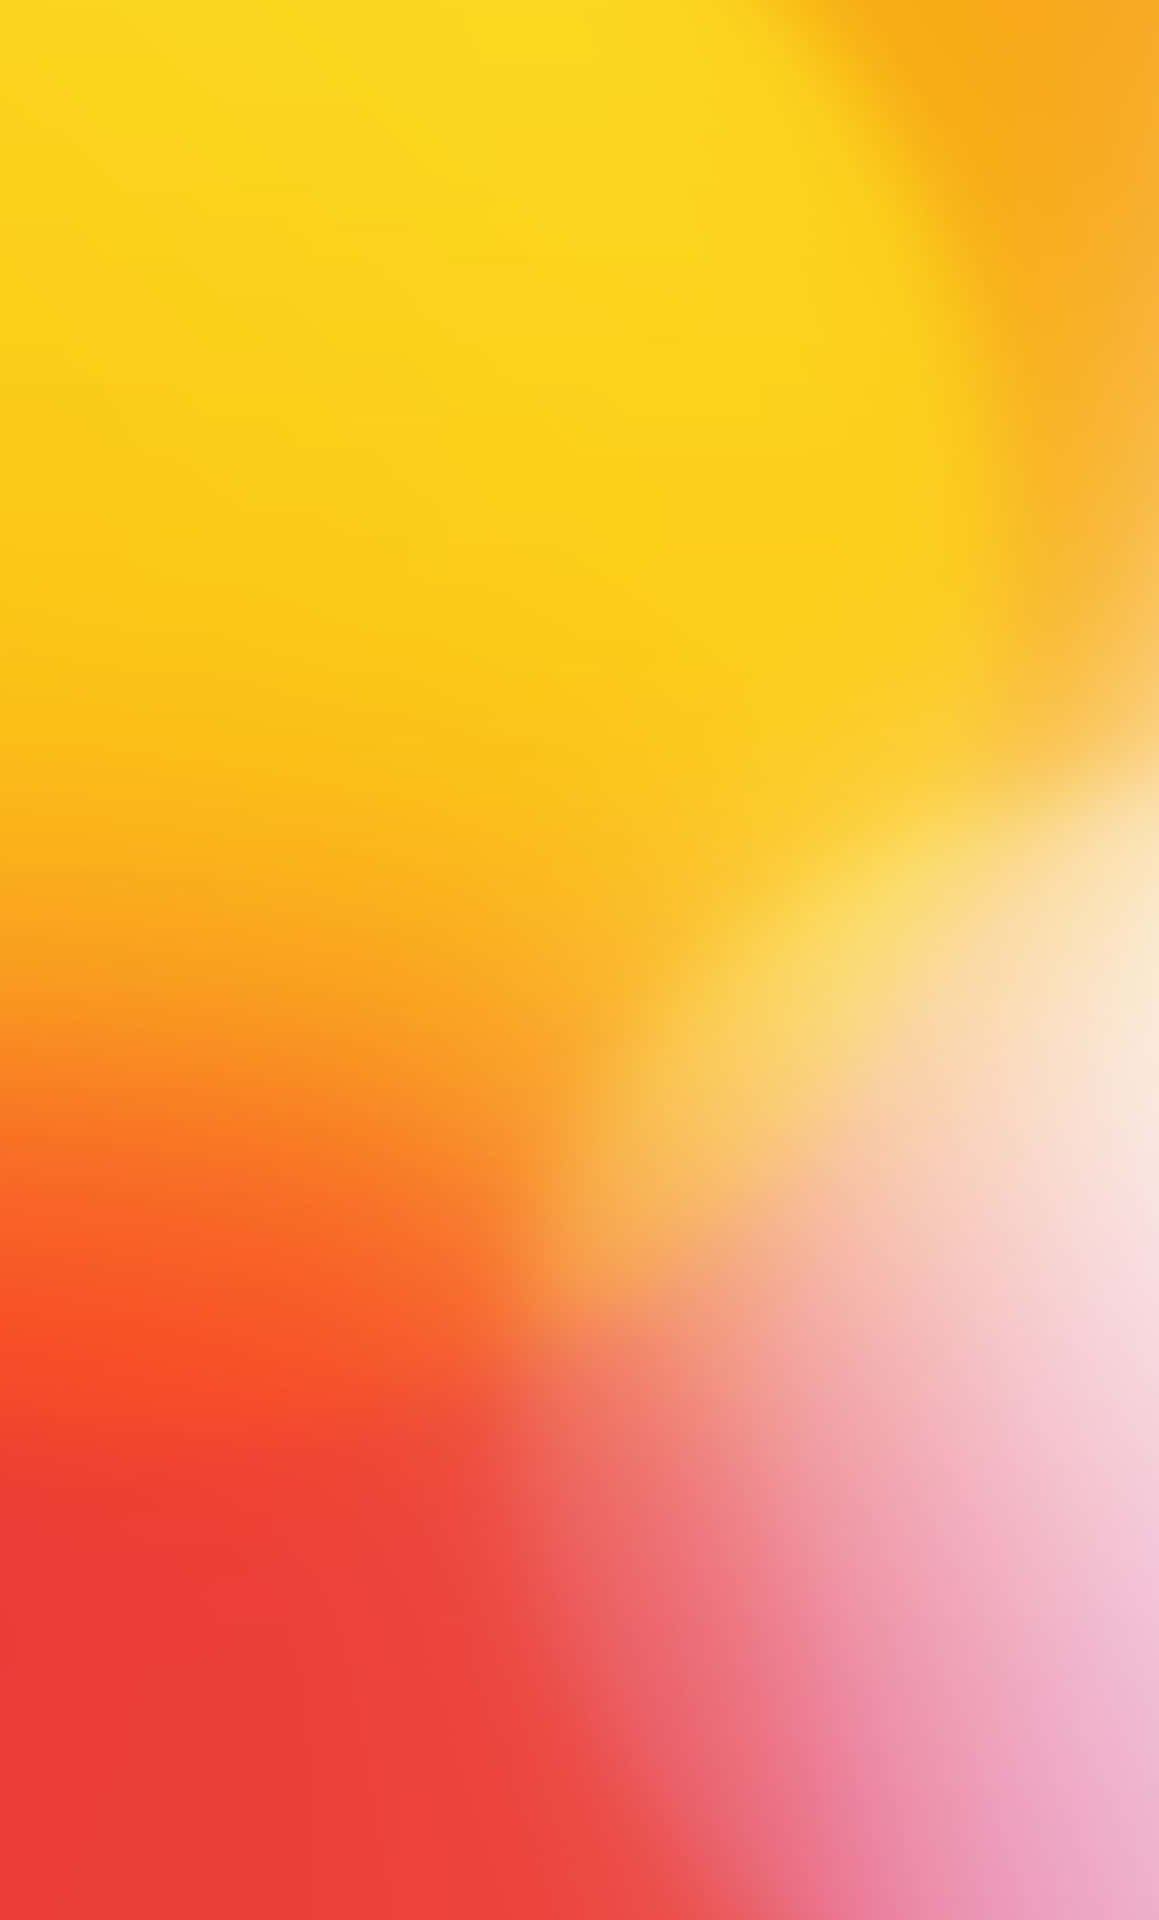 Einfarbenfroher Abstrakter Hintergrund Mit Den Farben Gelb, Orange Und Rot.